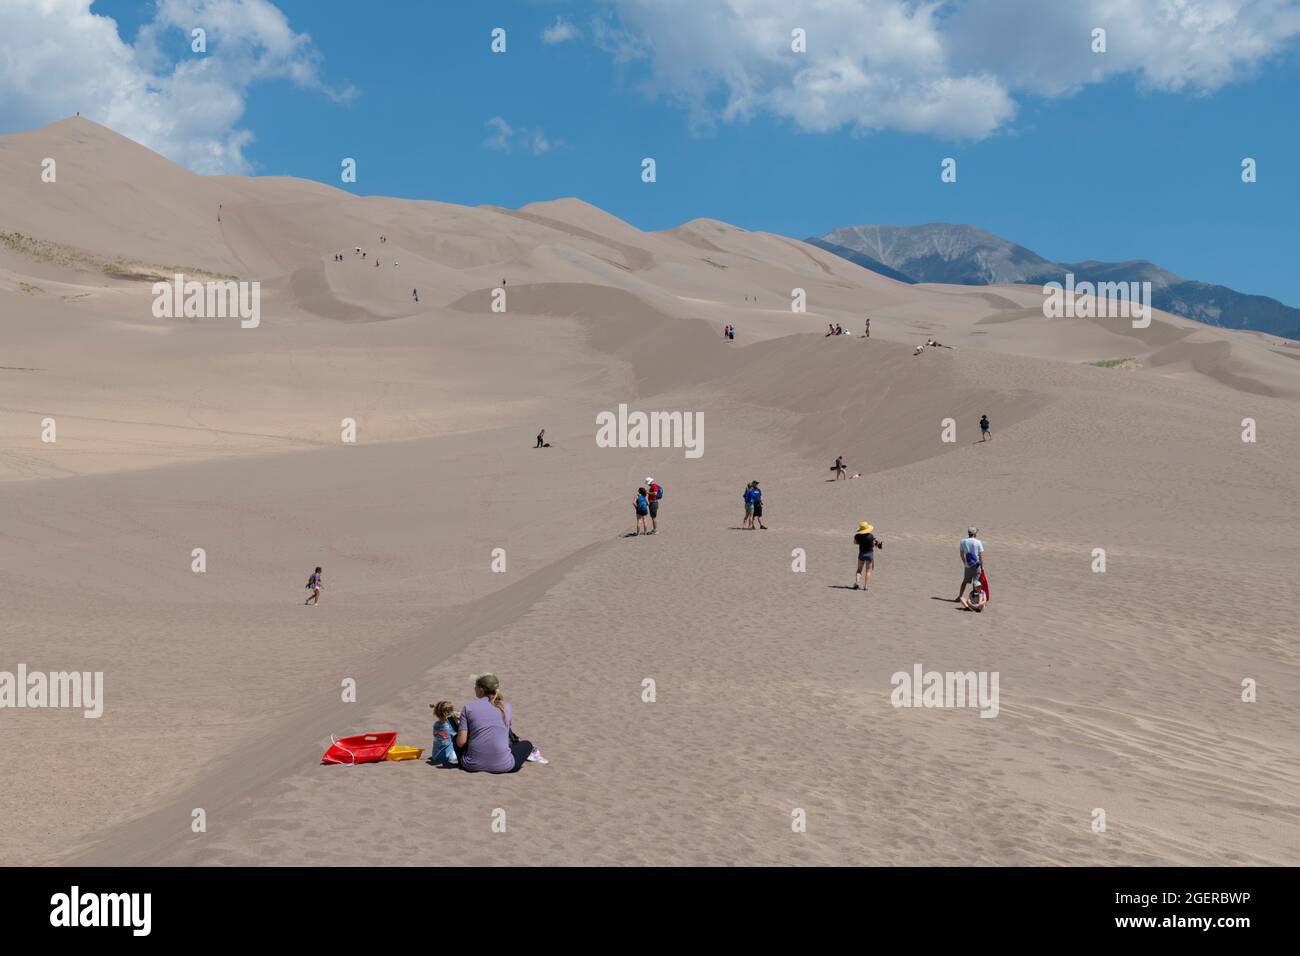 Colorado, San Luis Valley, Great Sand Dunes National Park. Grandi dune di sabbia alte fino a 750 metri. Turisti che si godono le dune. Foto Stock